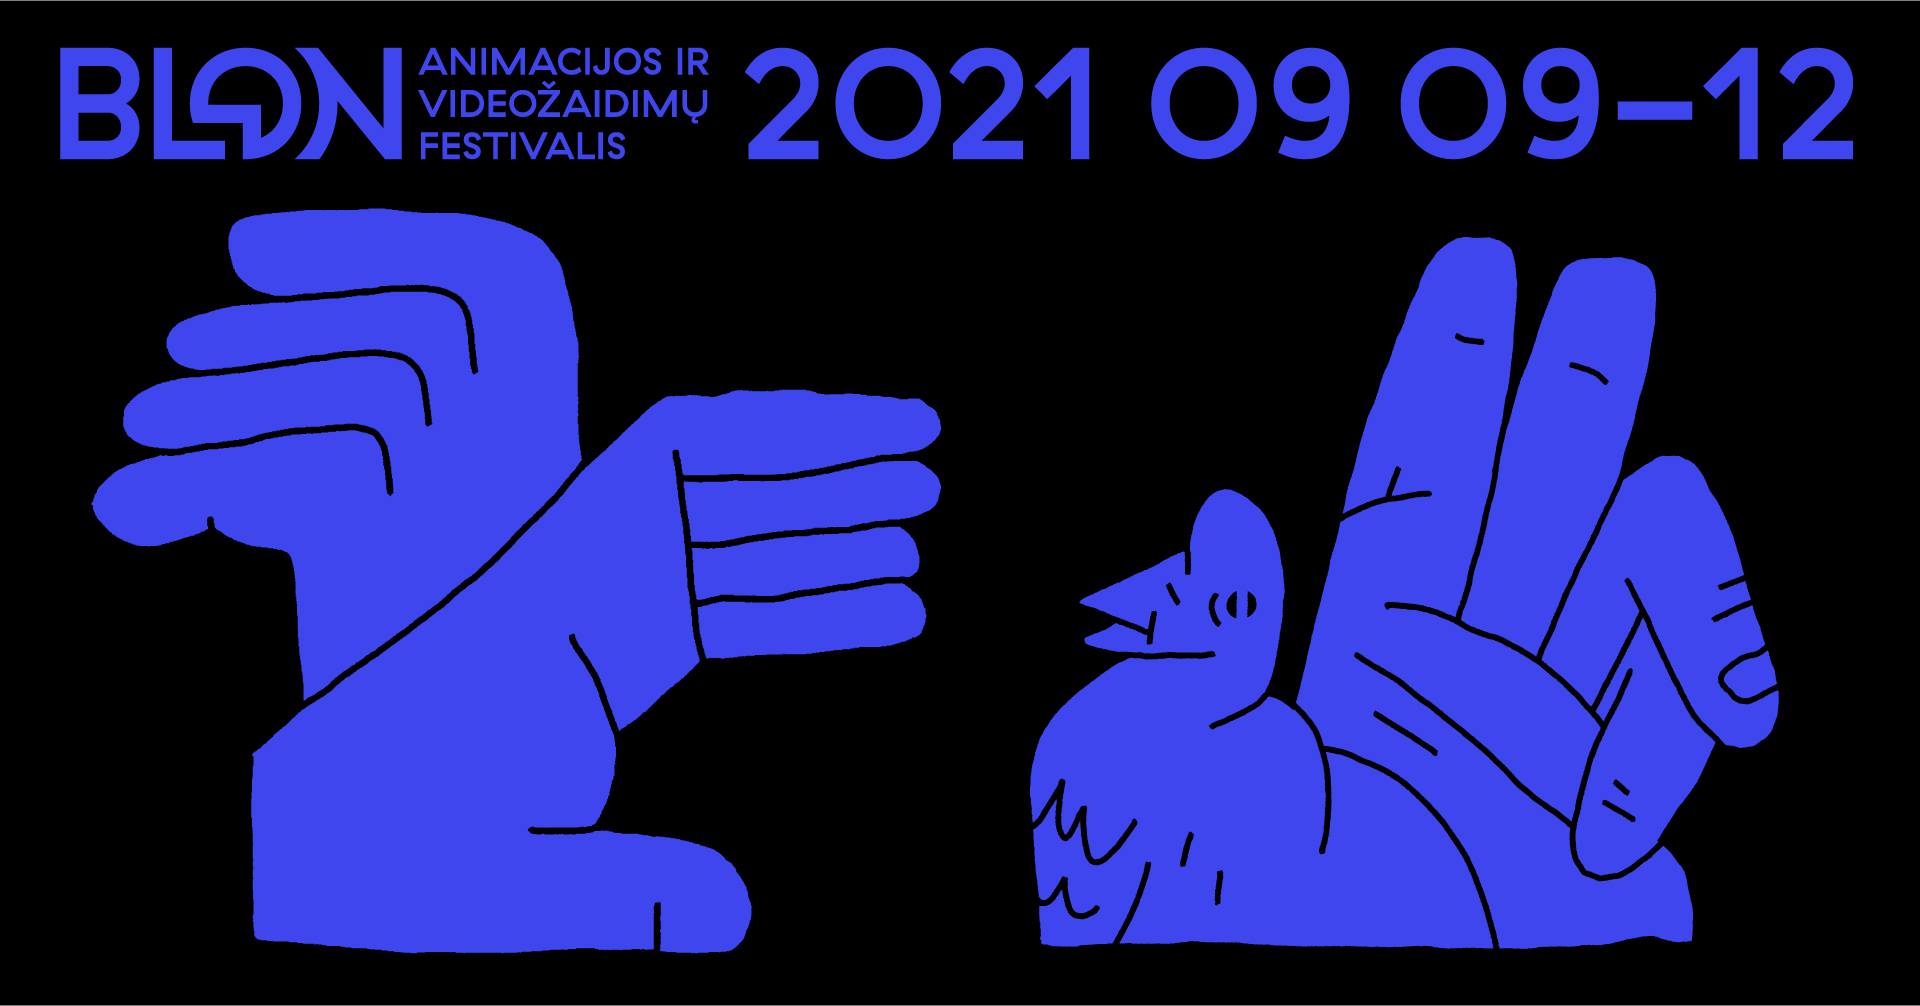 BLON’21 Animacijos ir videožaidimų festivalis